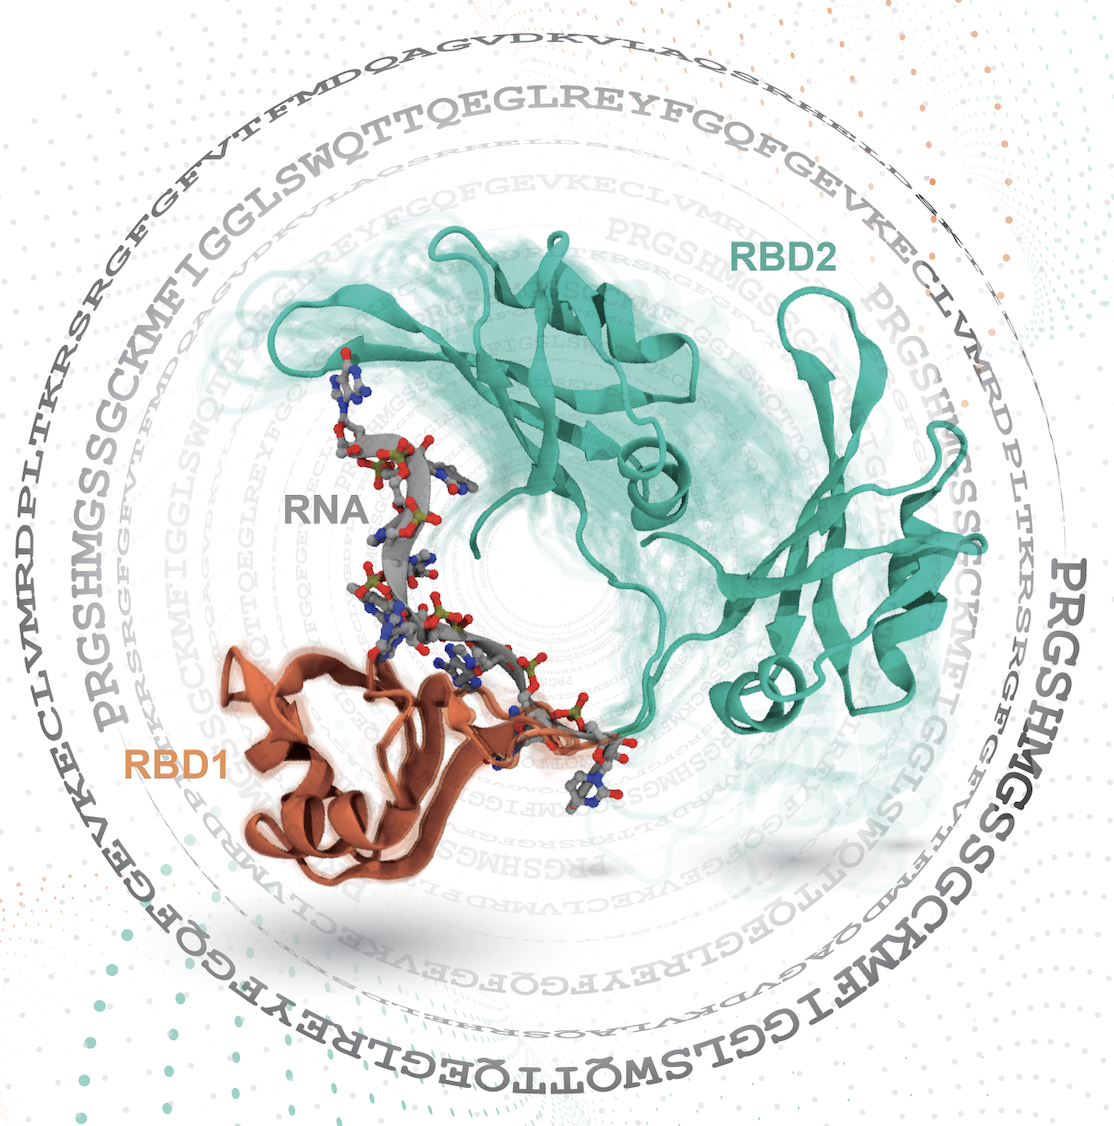 タンパク質と核酸が大きく構造を揺らがせて結合し、複合体を形成するプロセス